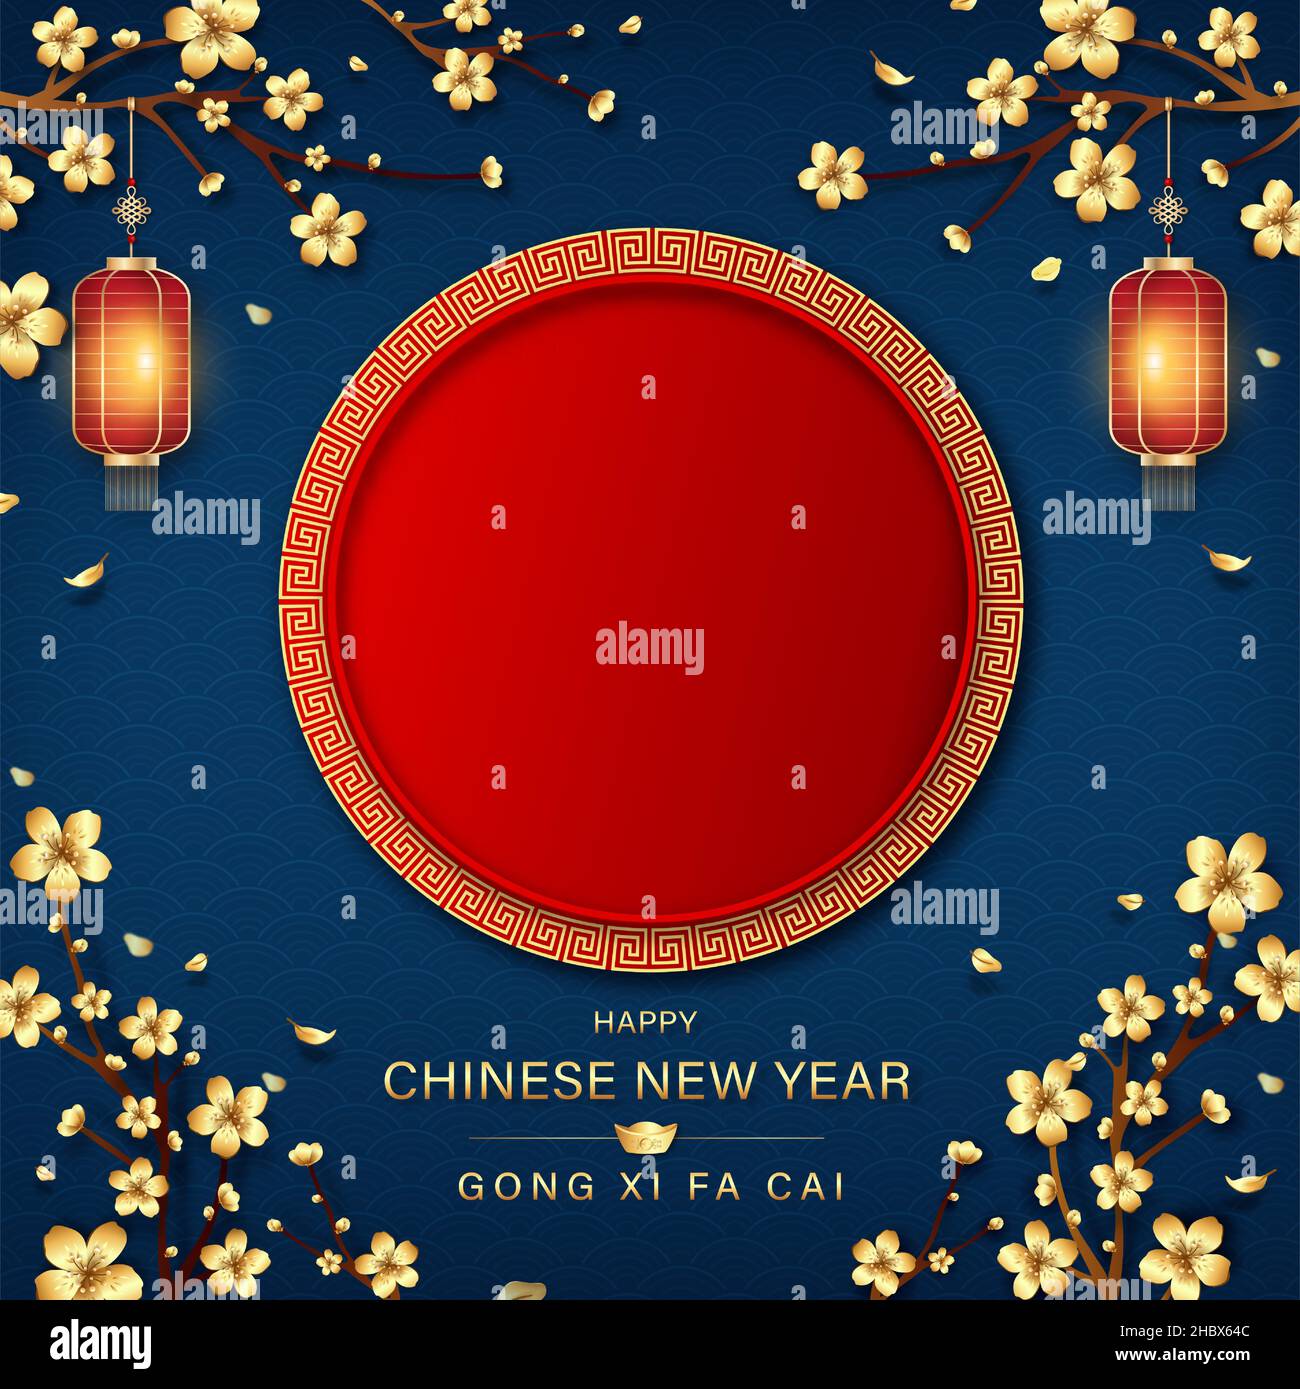 Chinesisches Neujahr Hintergrund mit roten leeren Raum in der Mitte und ausländische Texte Übersetzung als Wunsch, dass Sie Ihren Reichtum zu vergrößern Stock Vektor